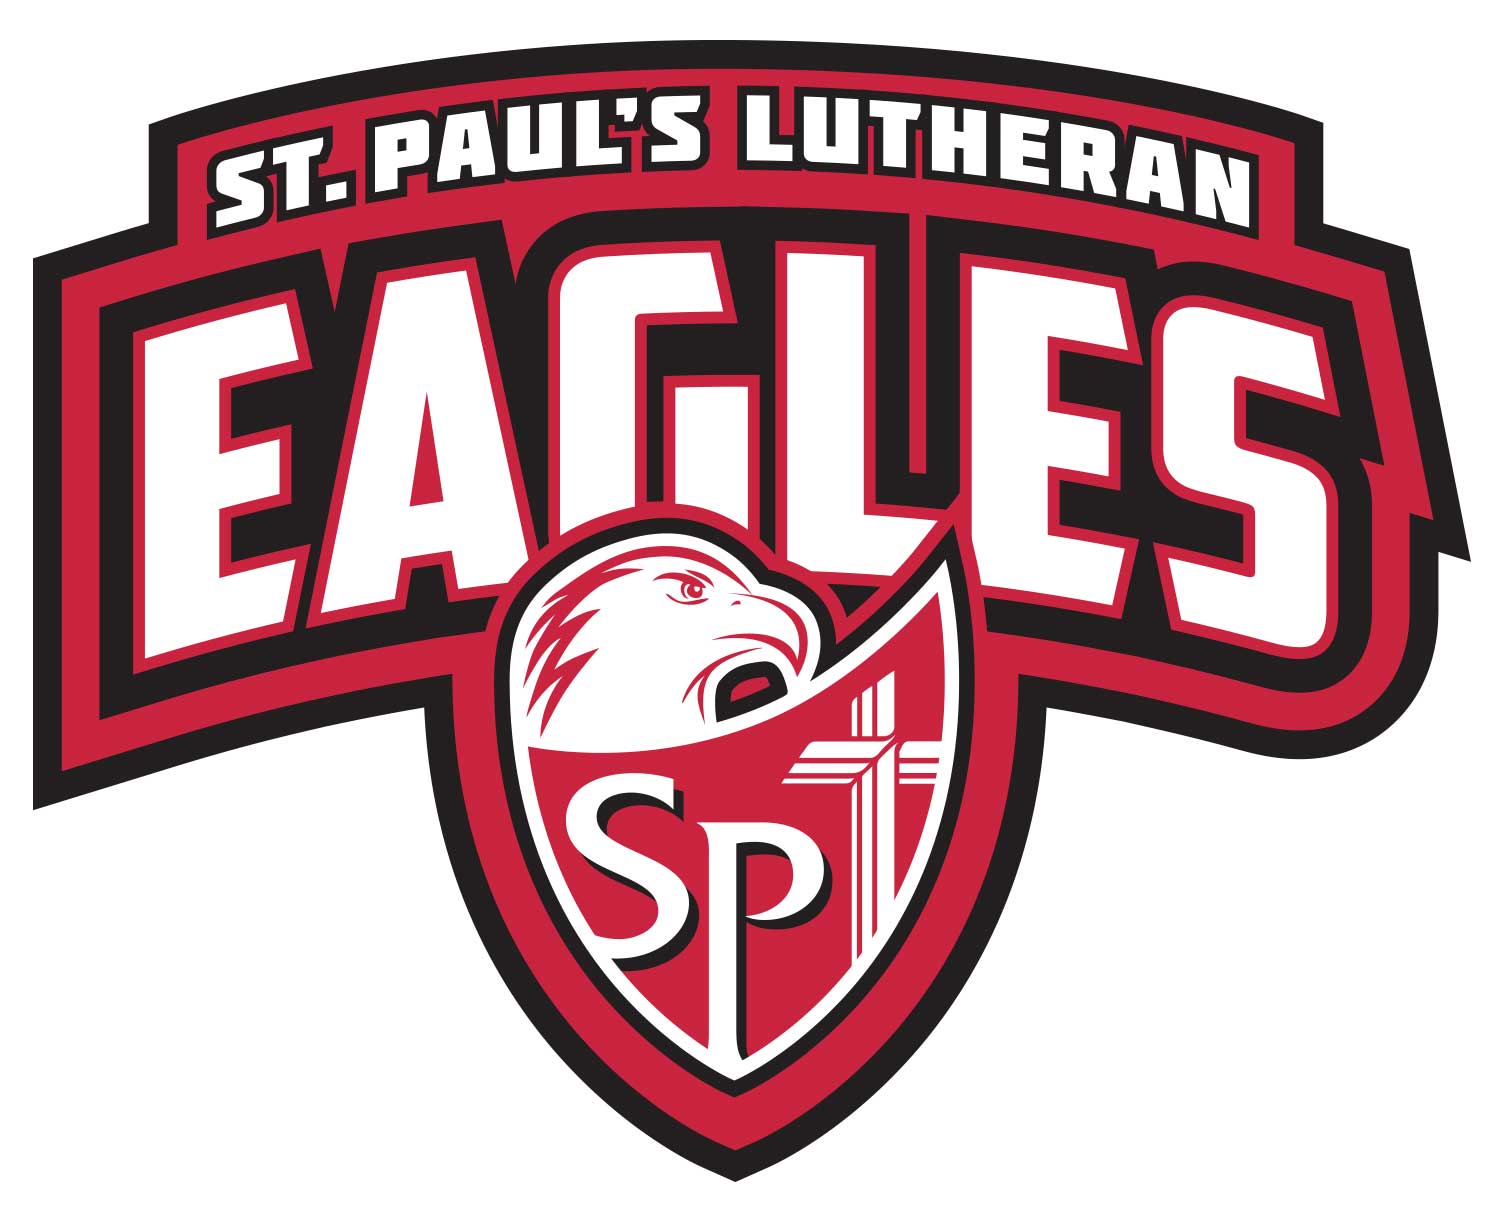 School Basketball Logo - A Girls Basketball. St. Paul's Lutheran School